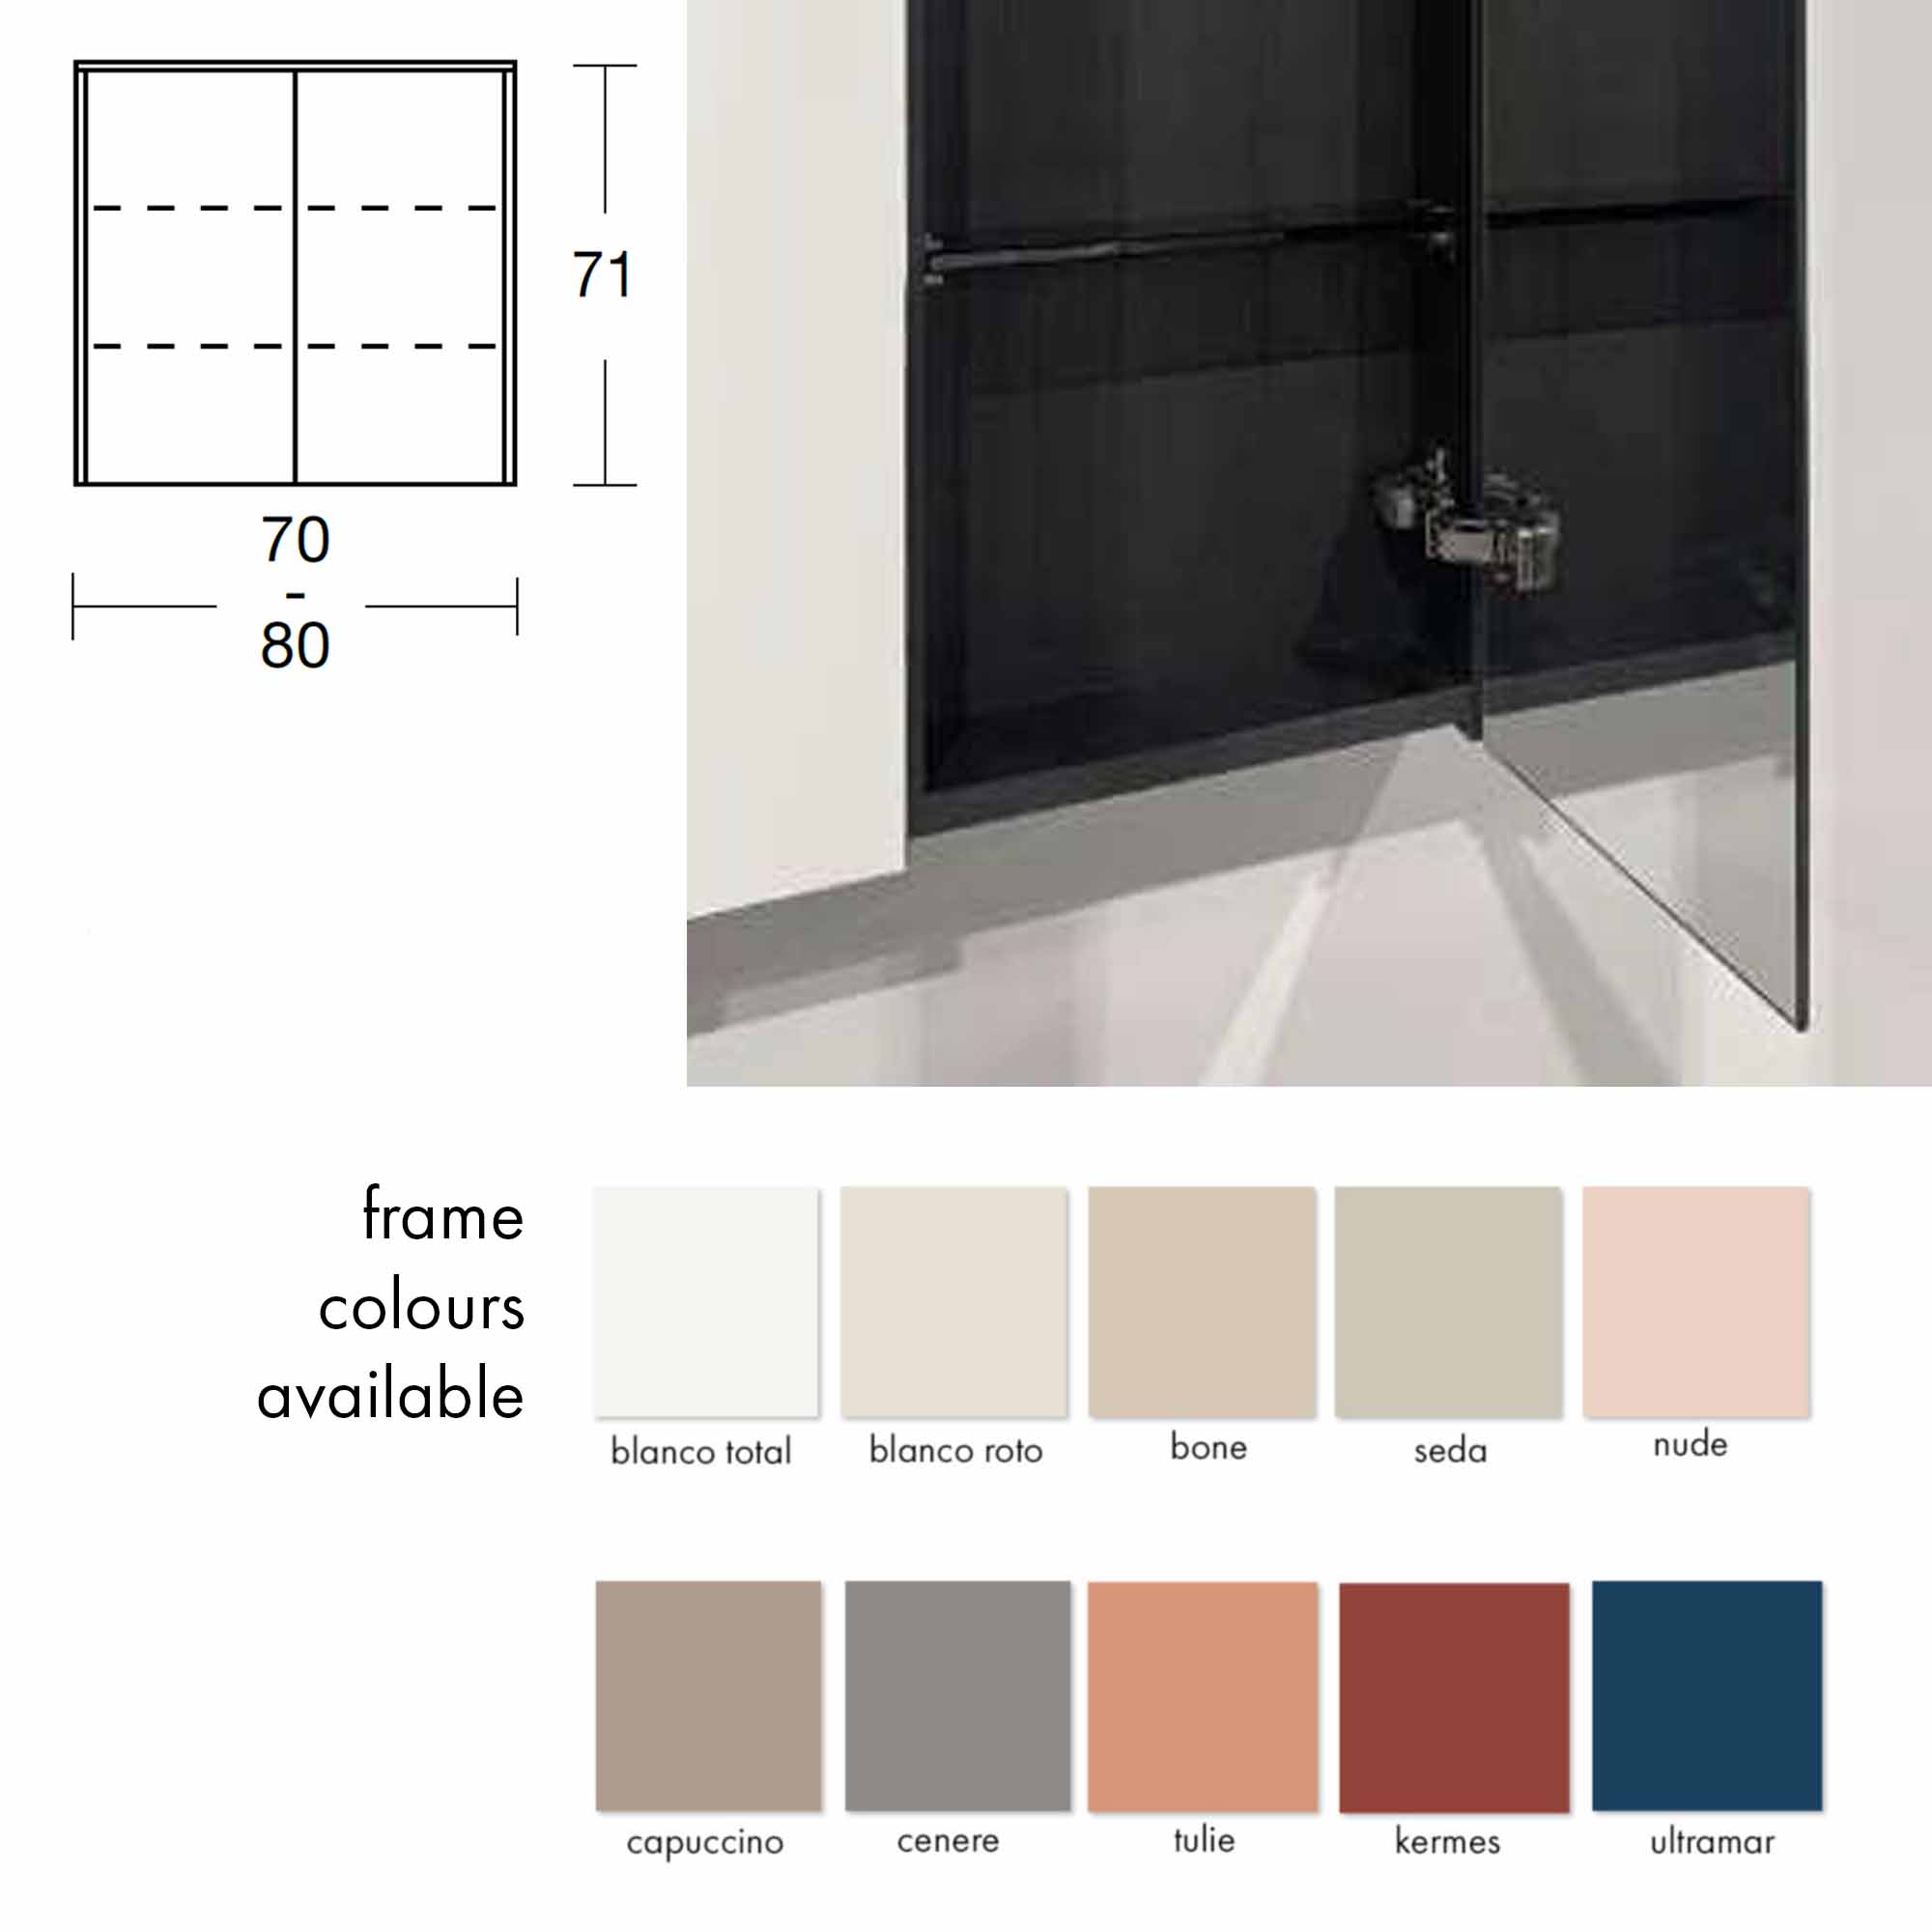 fiora qube bathroom mirror cabinet colours